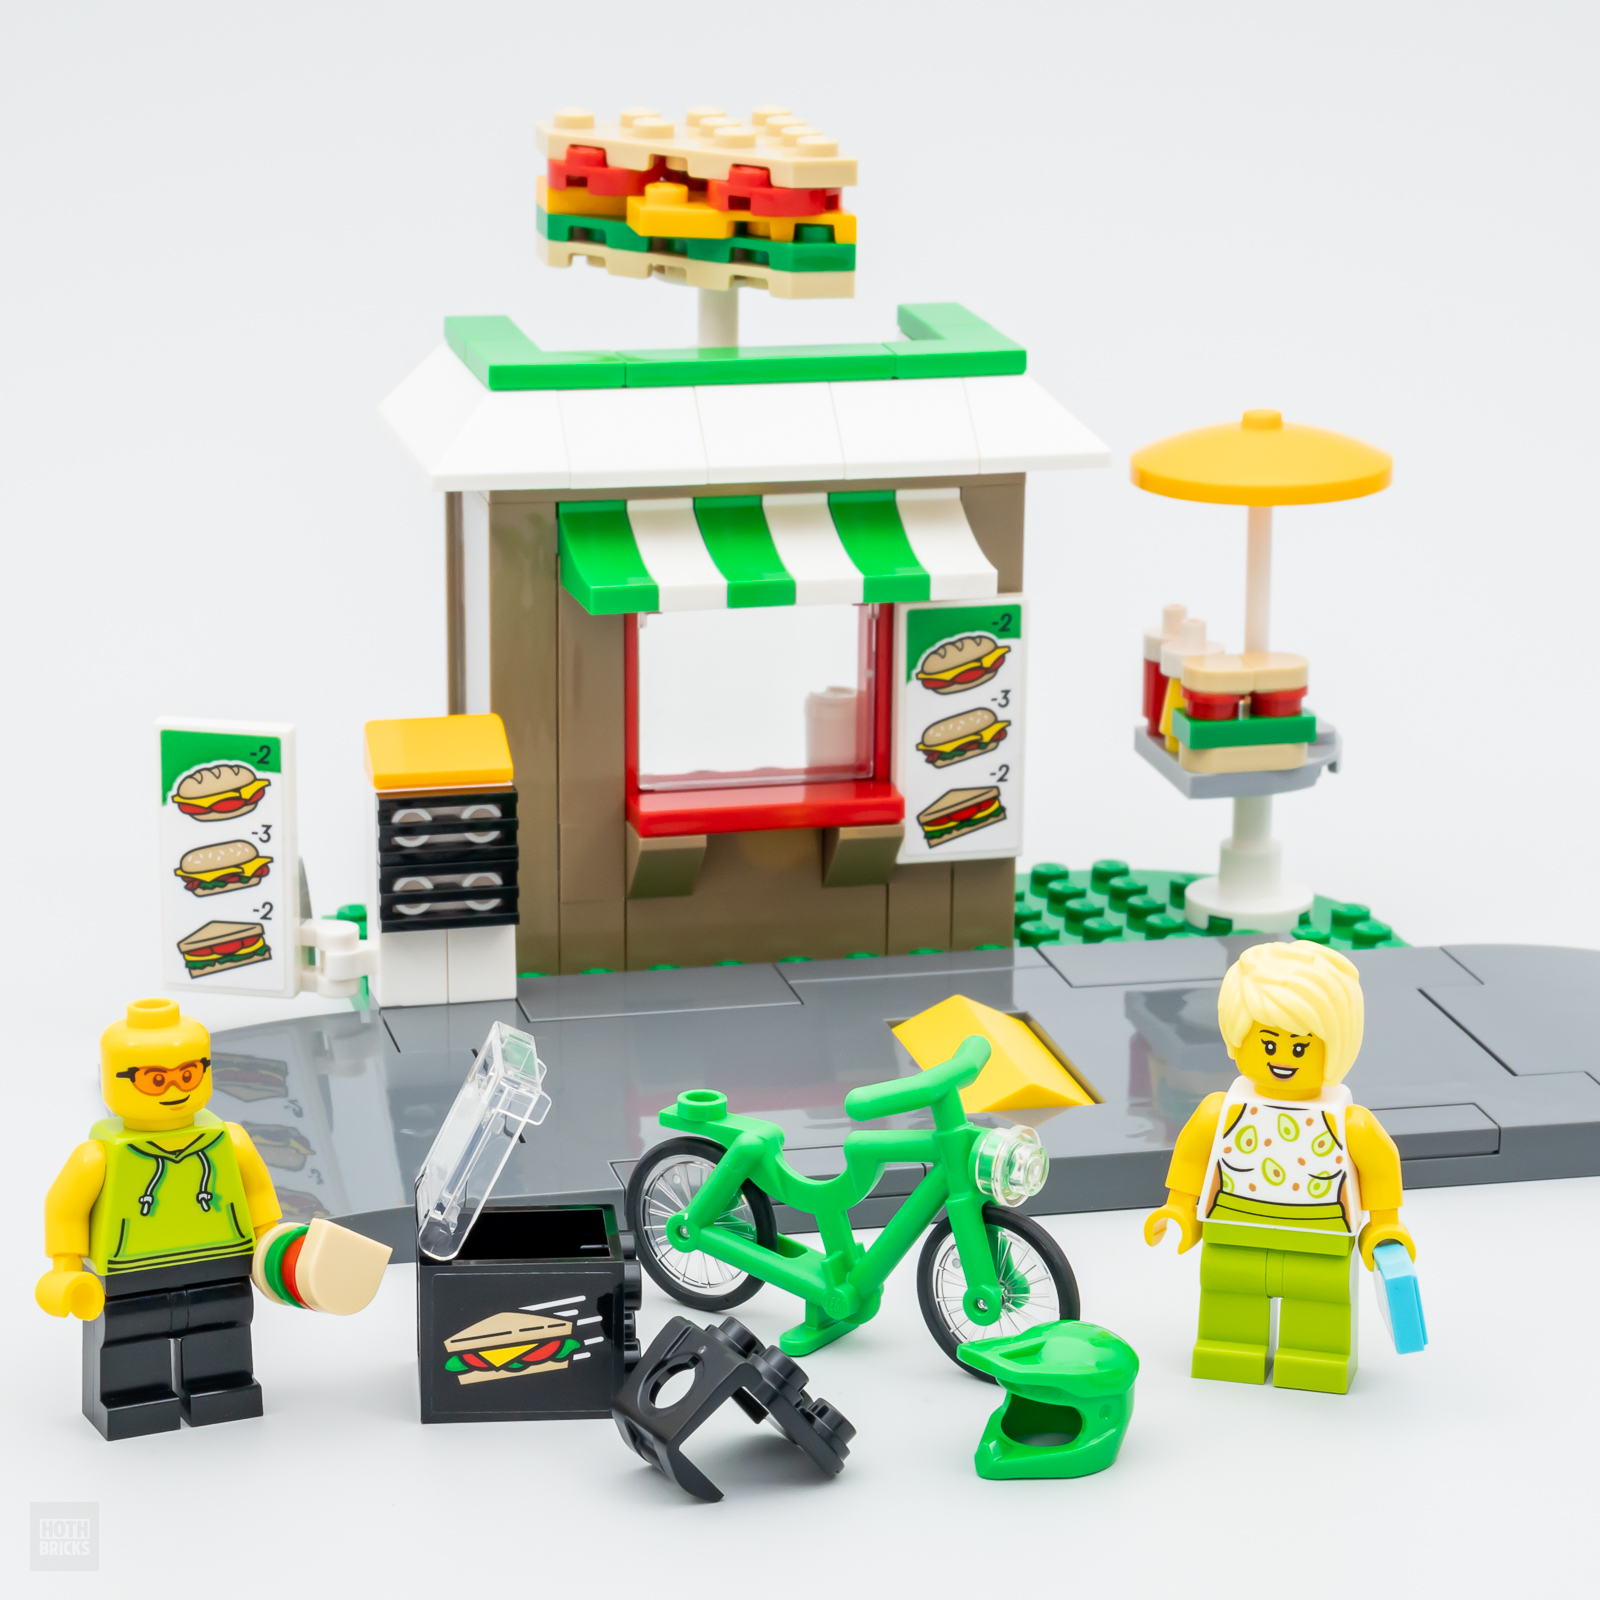 LEGO parduotuvėje: LEGO CITY 40578 sumuštinių parduotuvės rinkinys nemokamas perkant daugiau nei 90 €